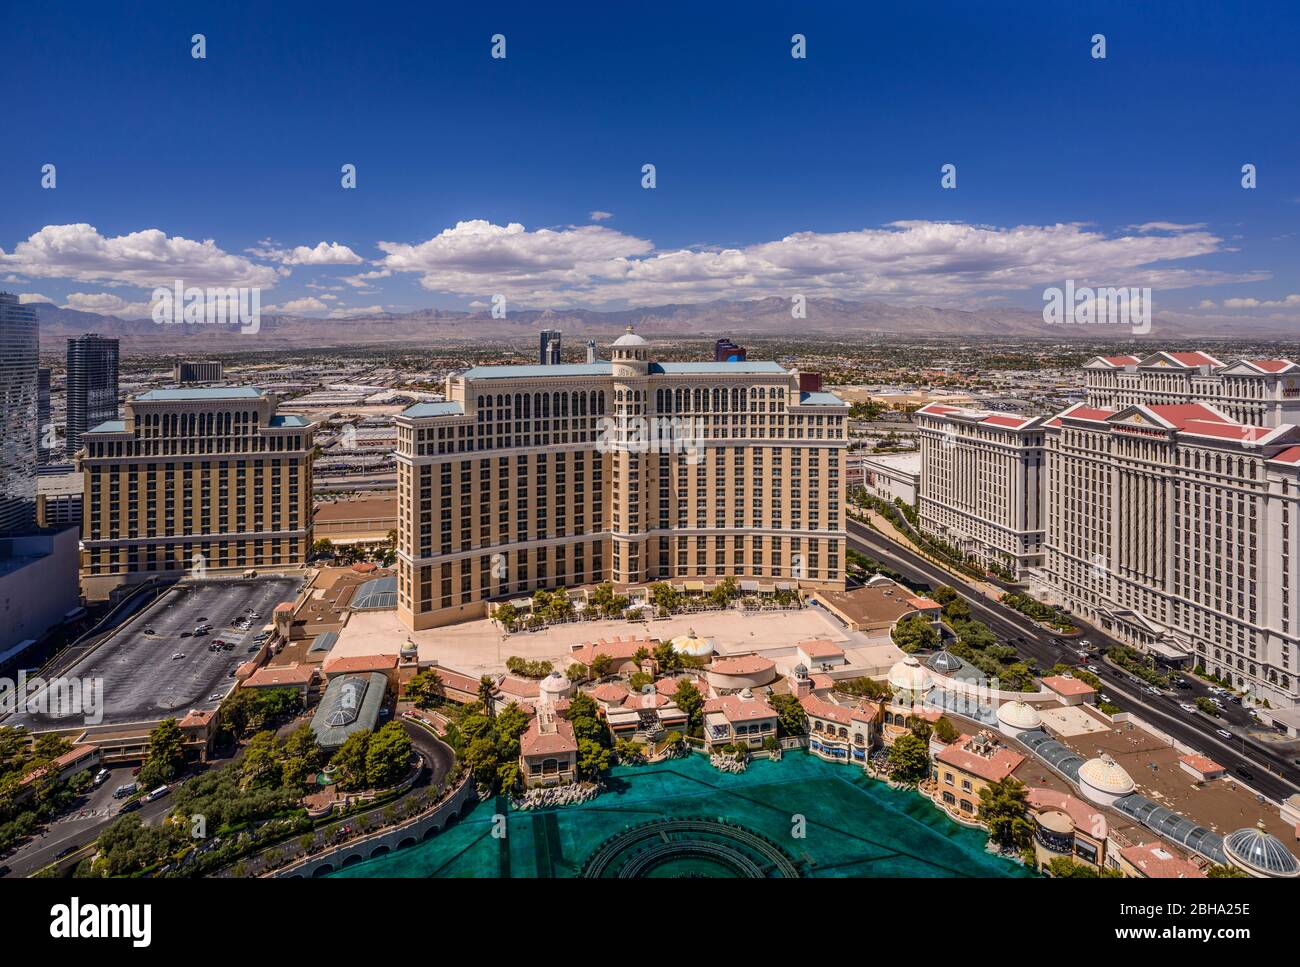 États-Unis, Nevada, Clark County, Las Vegas, Las Vegas Boulevard, The Strip, Bellagio Hotel, Blick vom Paris Las Vegas Tour Eiffel Banque D'Images